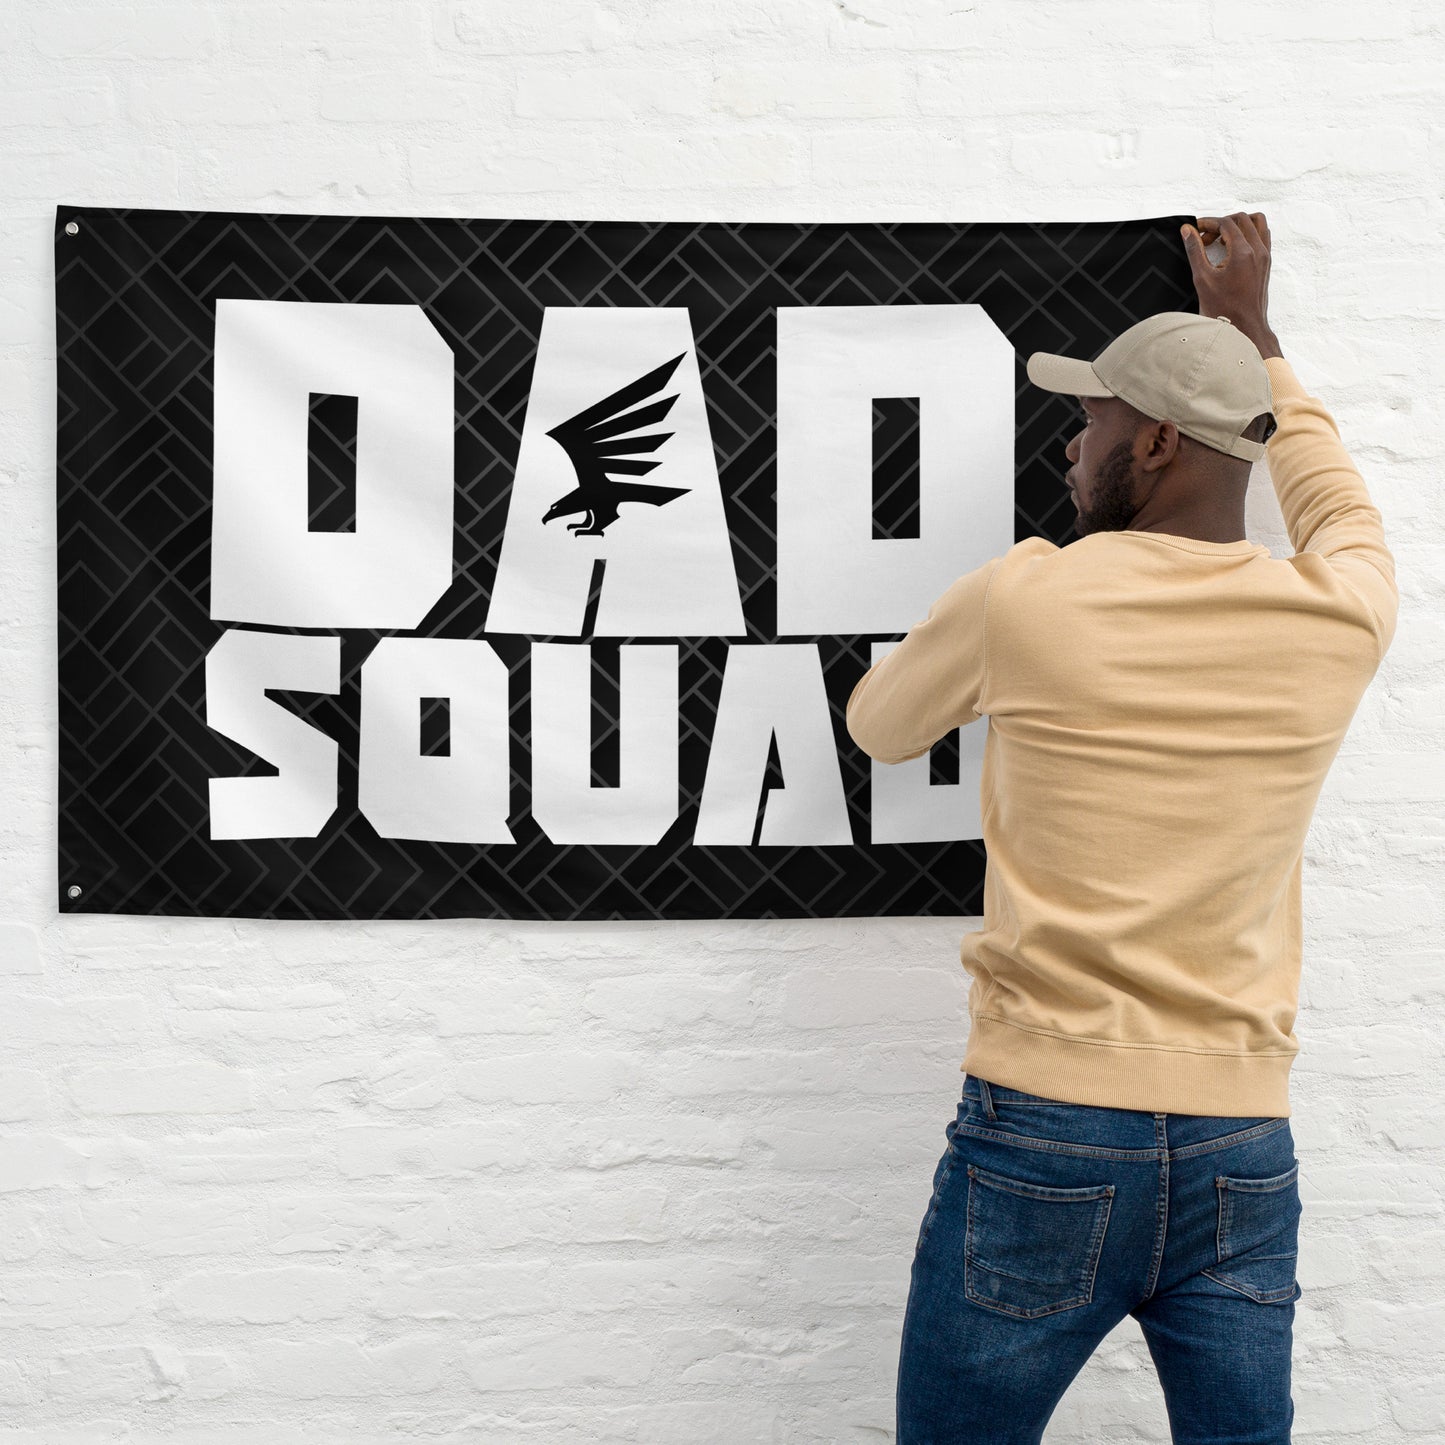 Dad Squad Flag - Logo 3.0